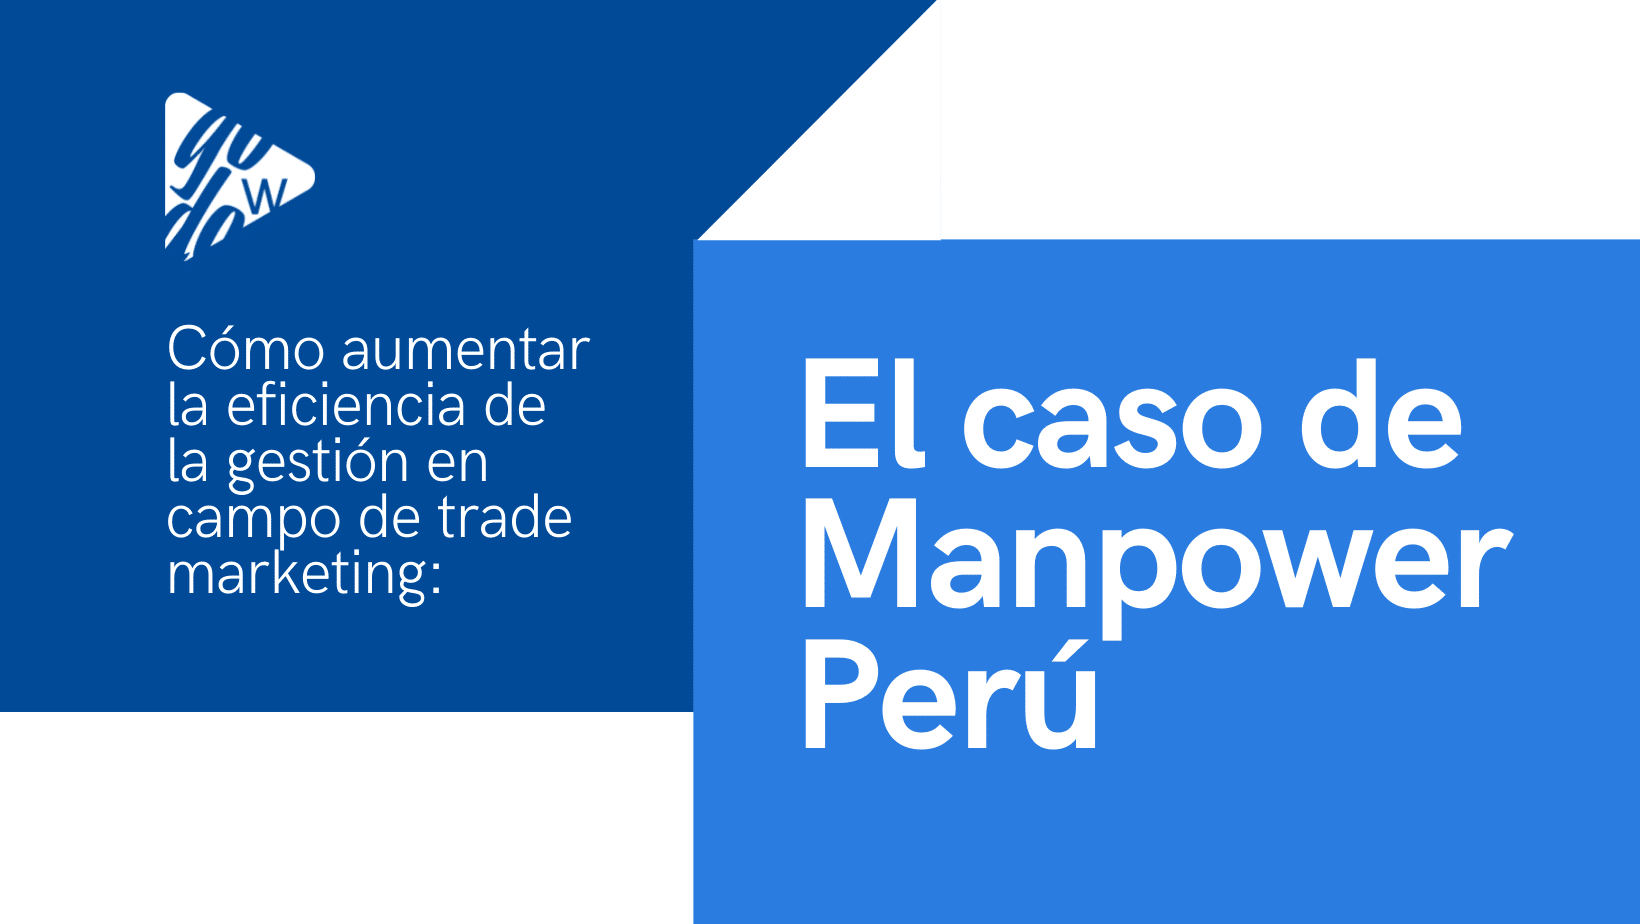 En este momento estás viendo Cómo aumentar la eficiencia de la gestión en campo de trade marketing: el caso de Manpower Perú